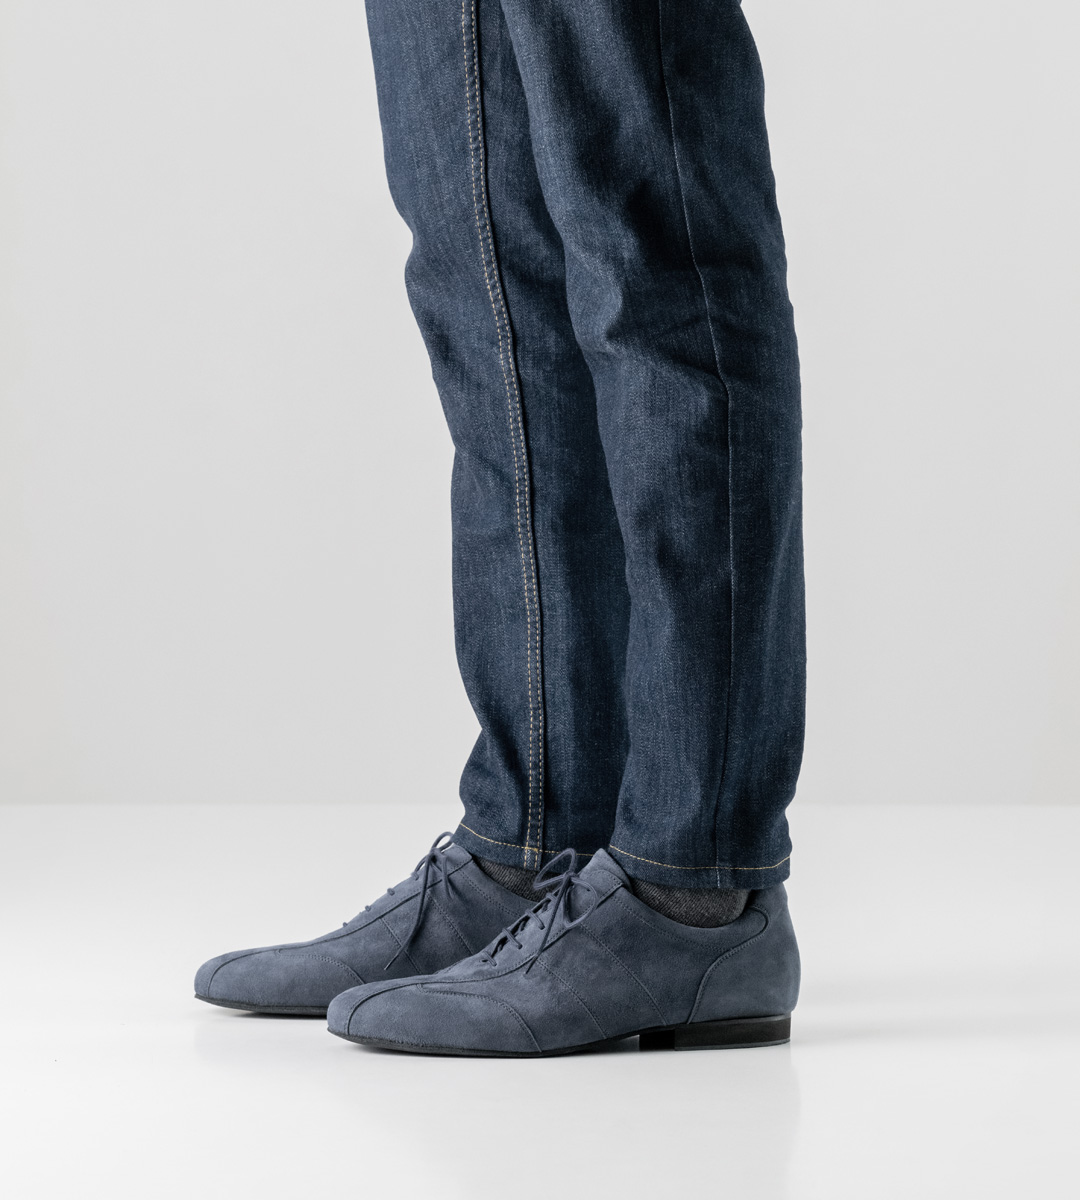 blaue Jeans in Kombination mit 1,5 cm hohem Werner Kern Herrentanzschuh